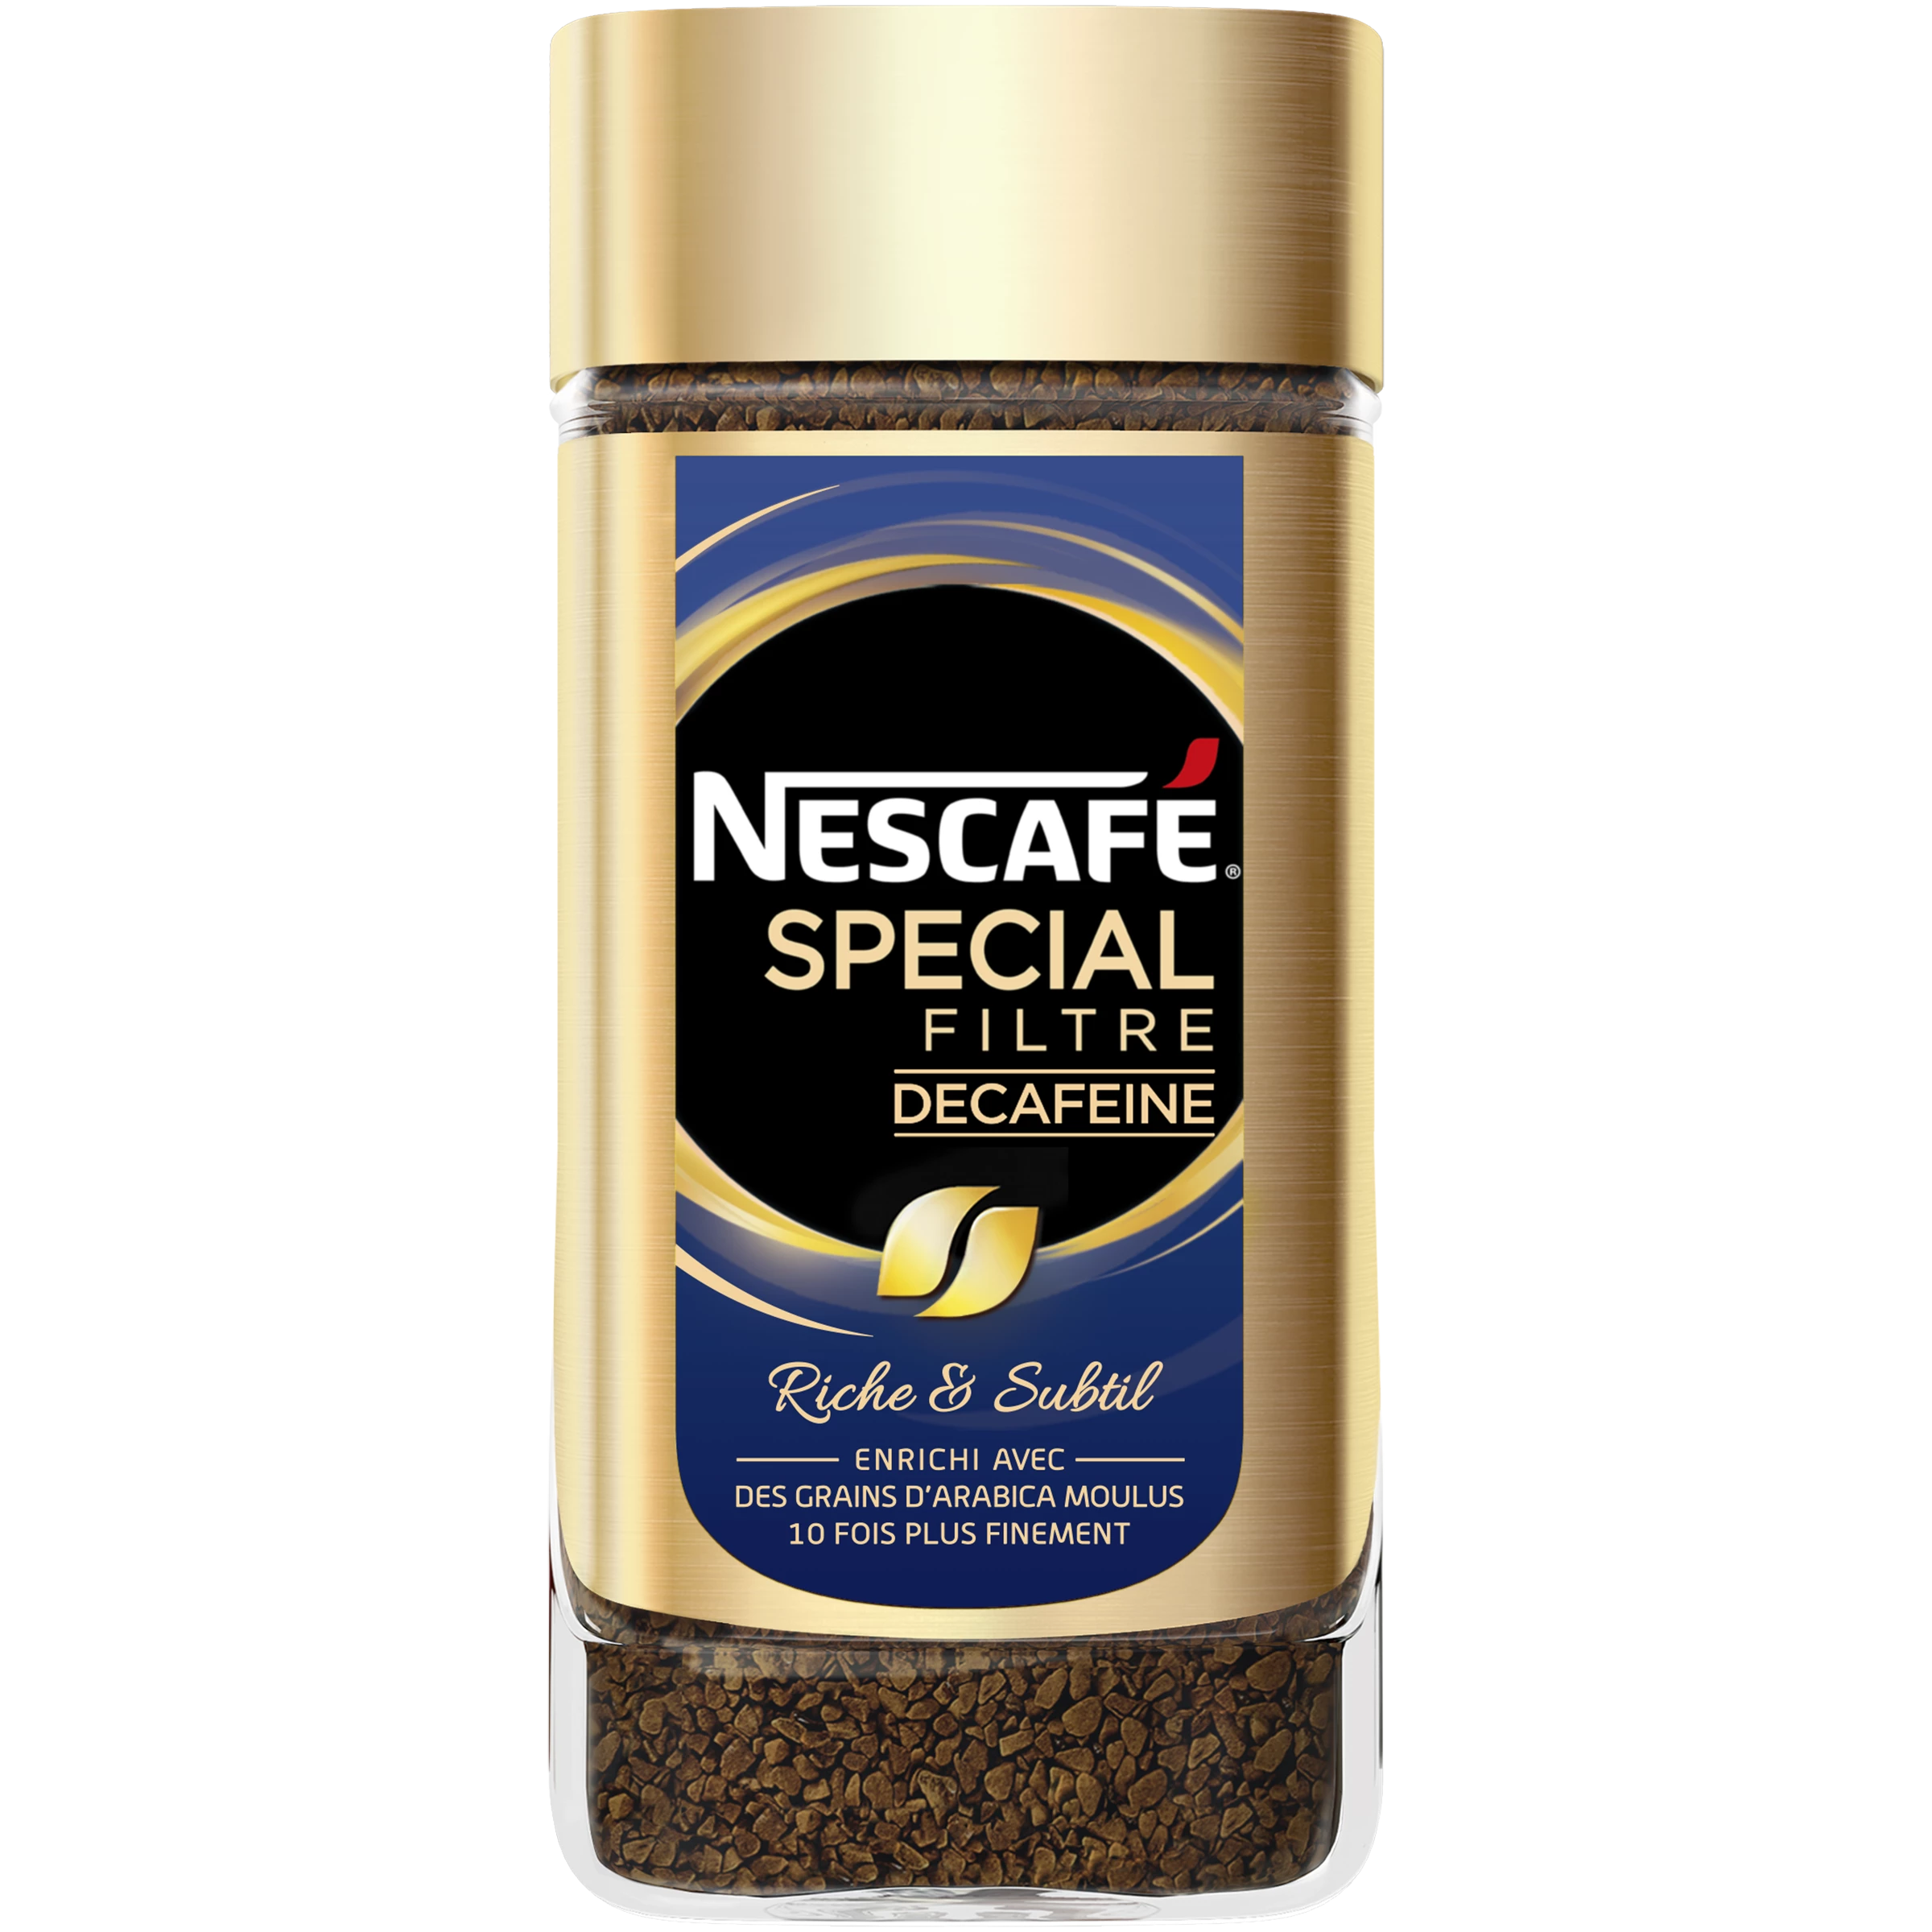 Special decaffeinated filter coffee 200g - NESCAFÉ